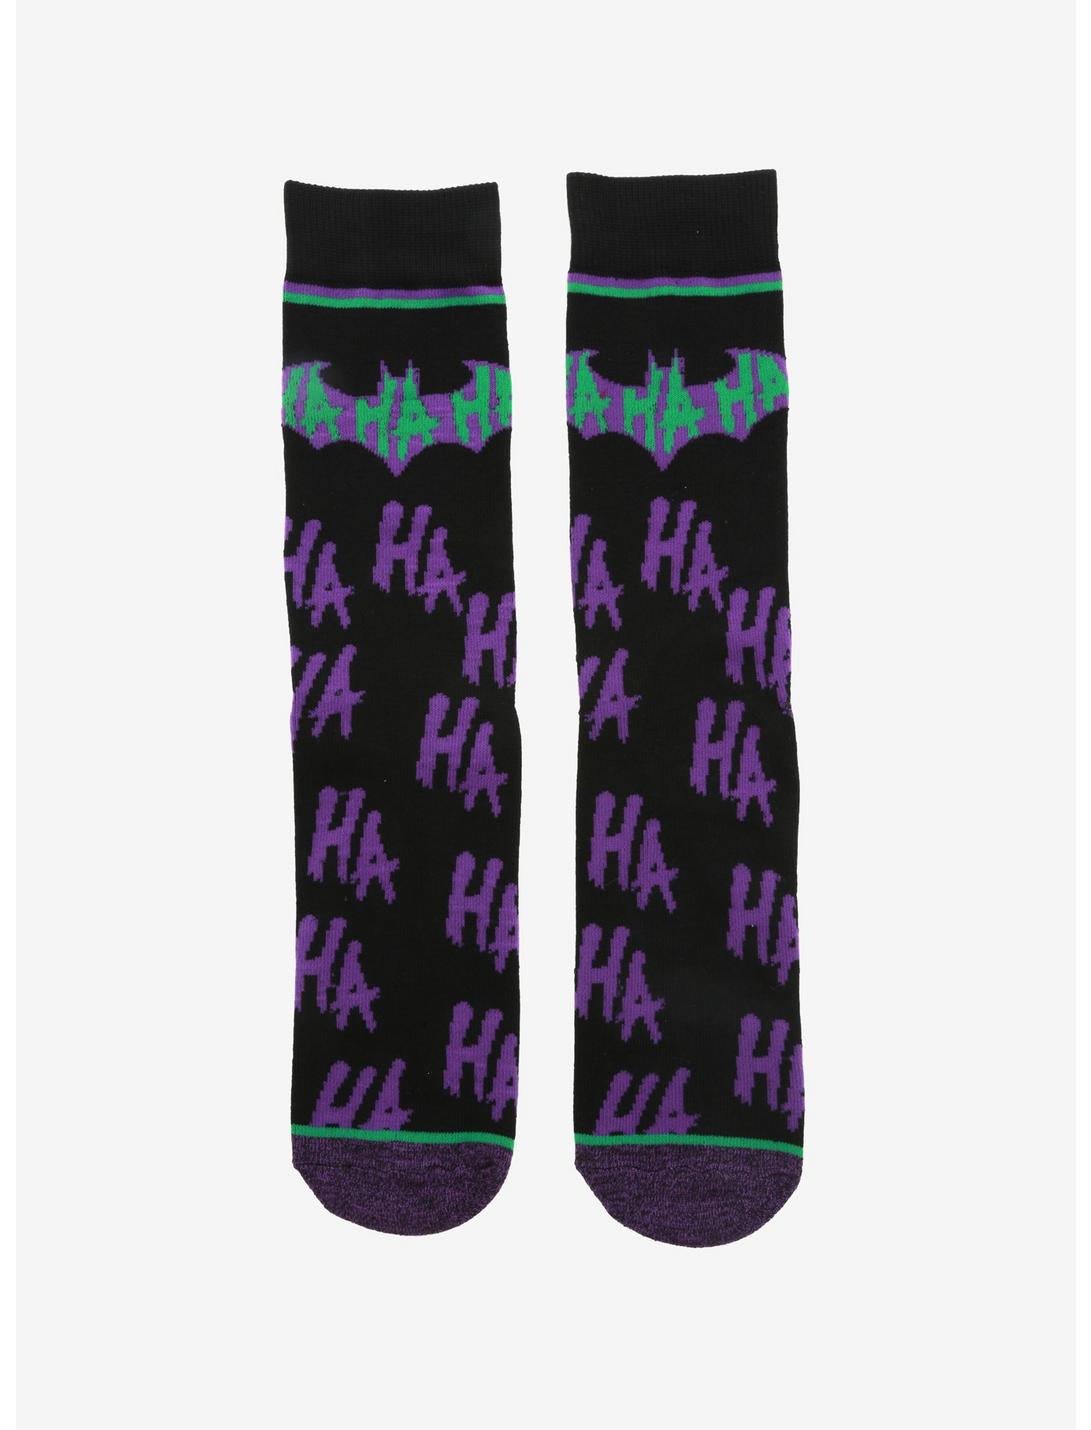 DC Comics Batman Joker Ha Ha Crew Socks - BoxLunch Exclusive, , hi-res